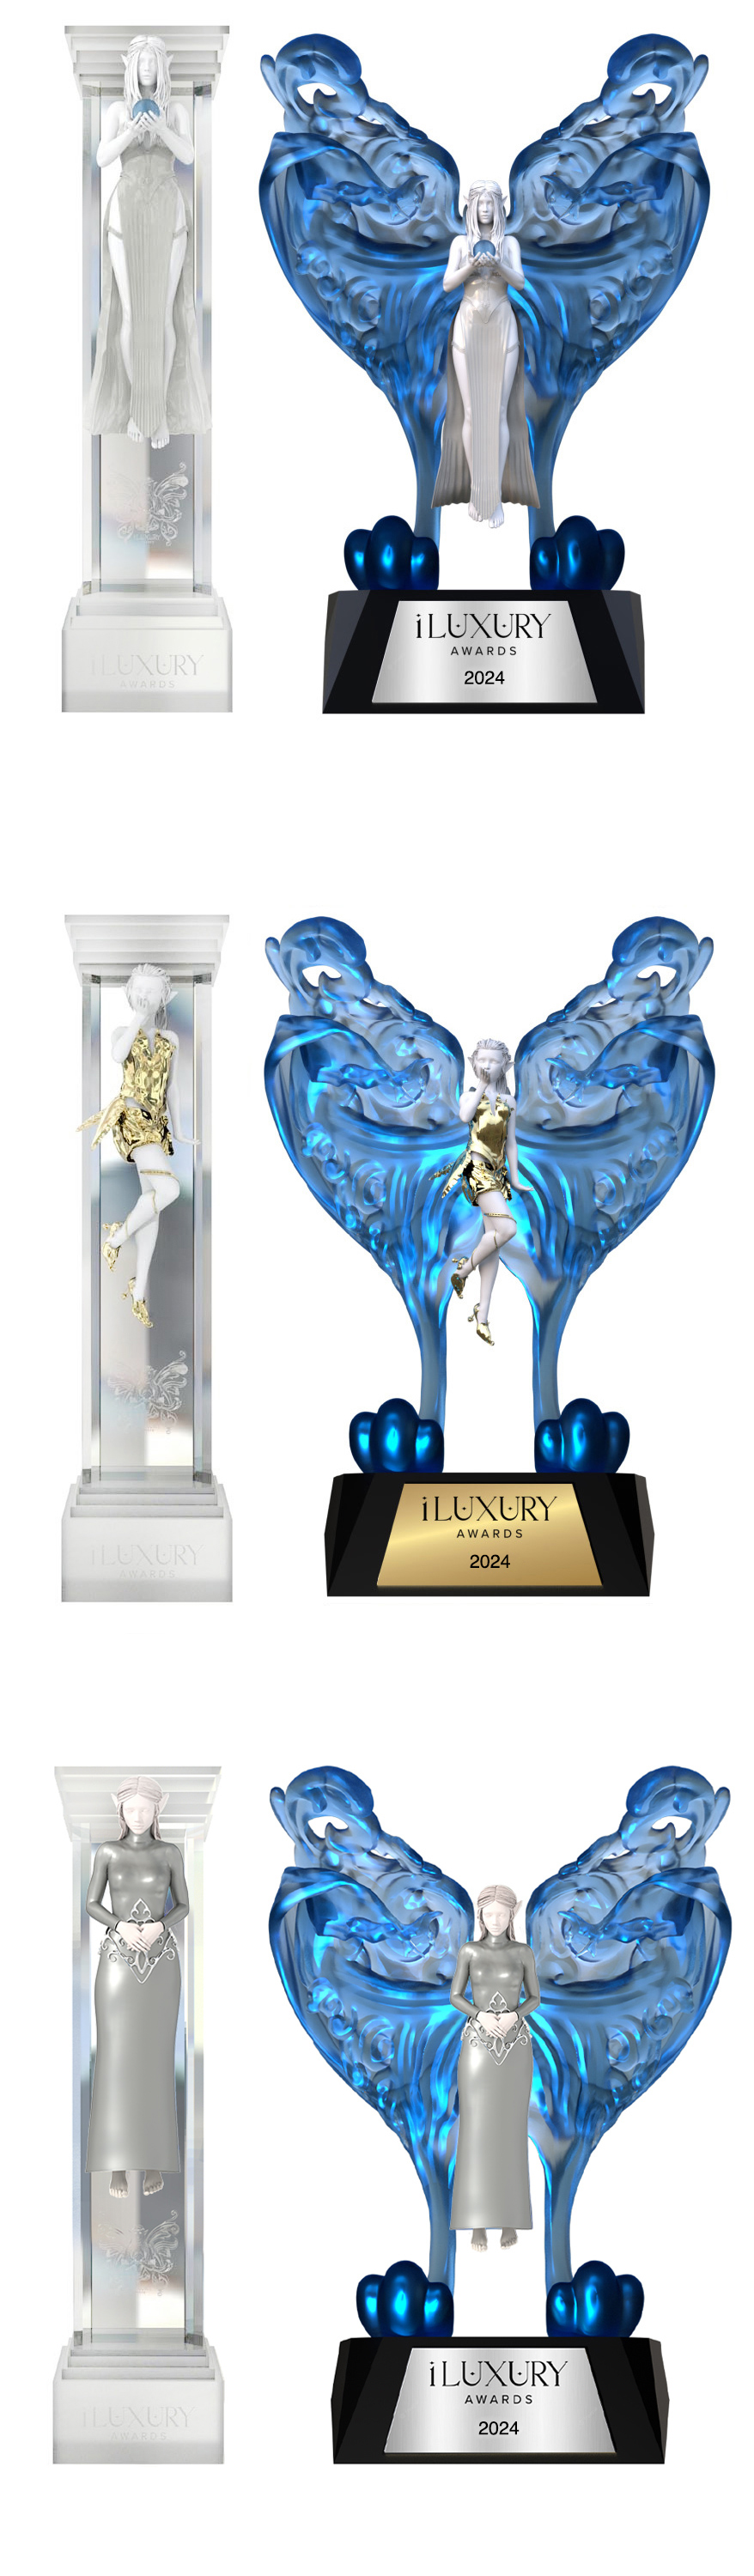 iLuxury Awards Statuettes, iLuxury Awards Winner Statuette